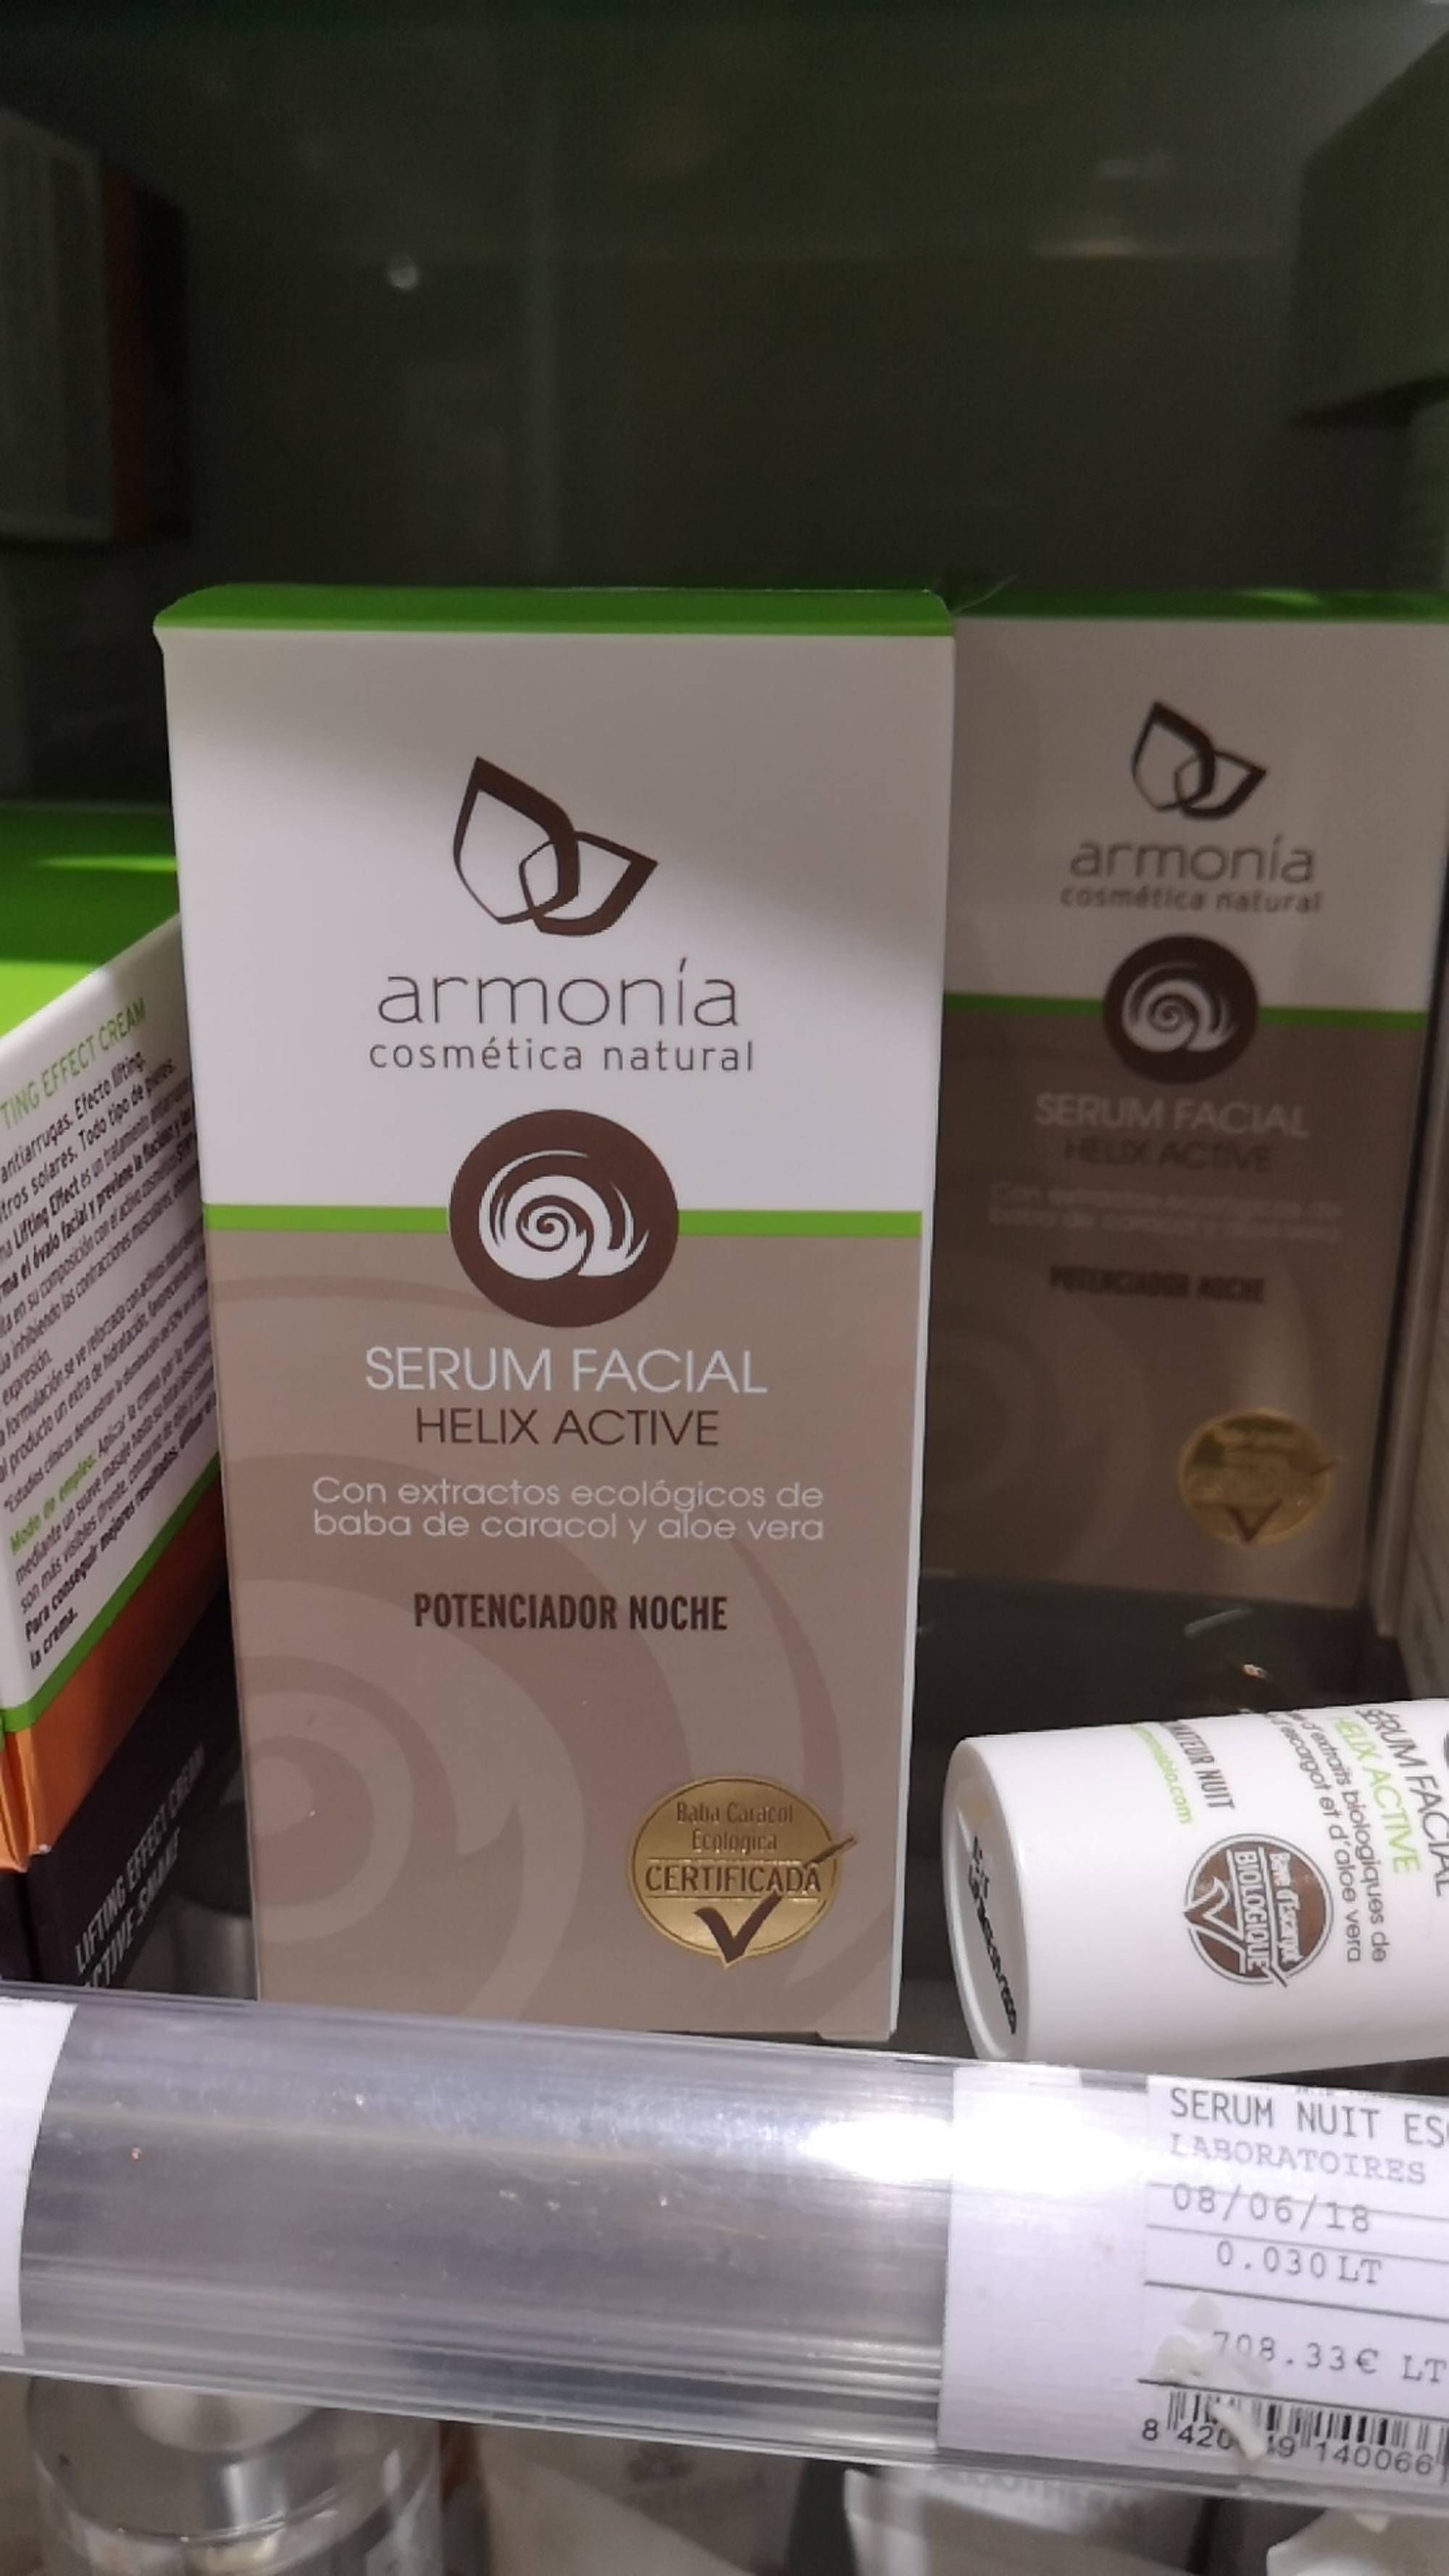 ARMONIA - Serum facial helix active